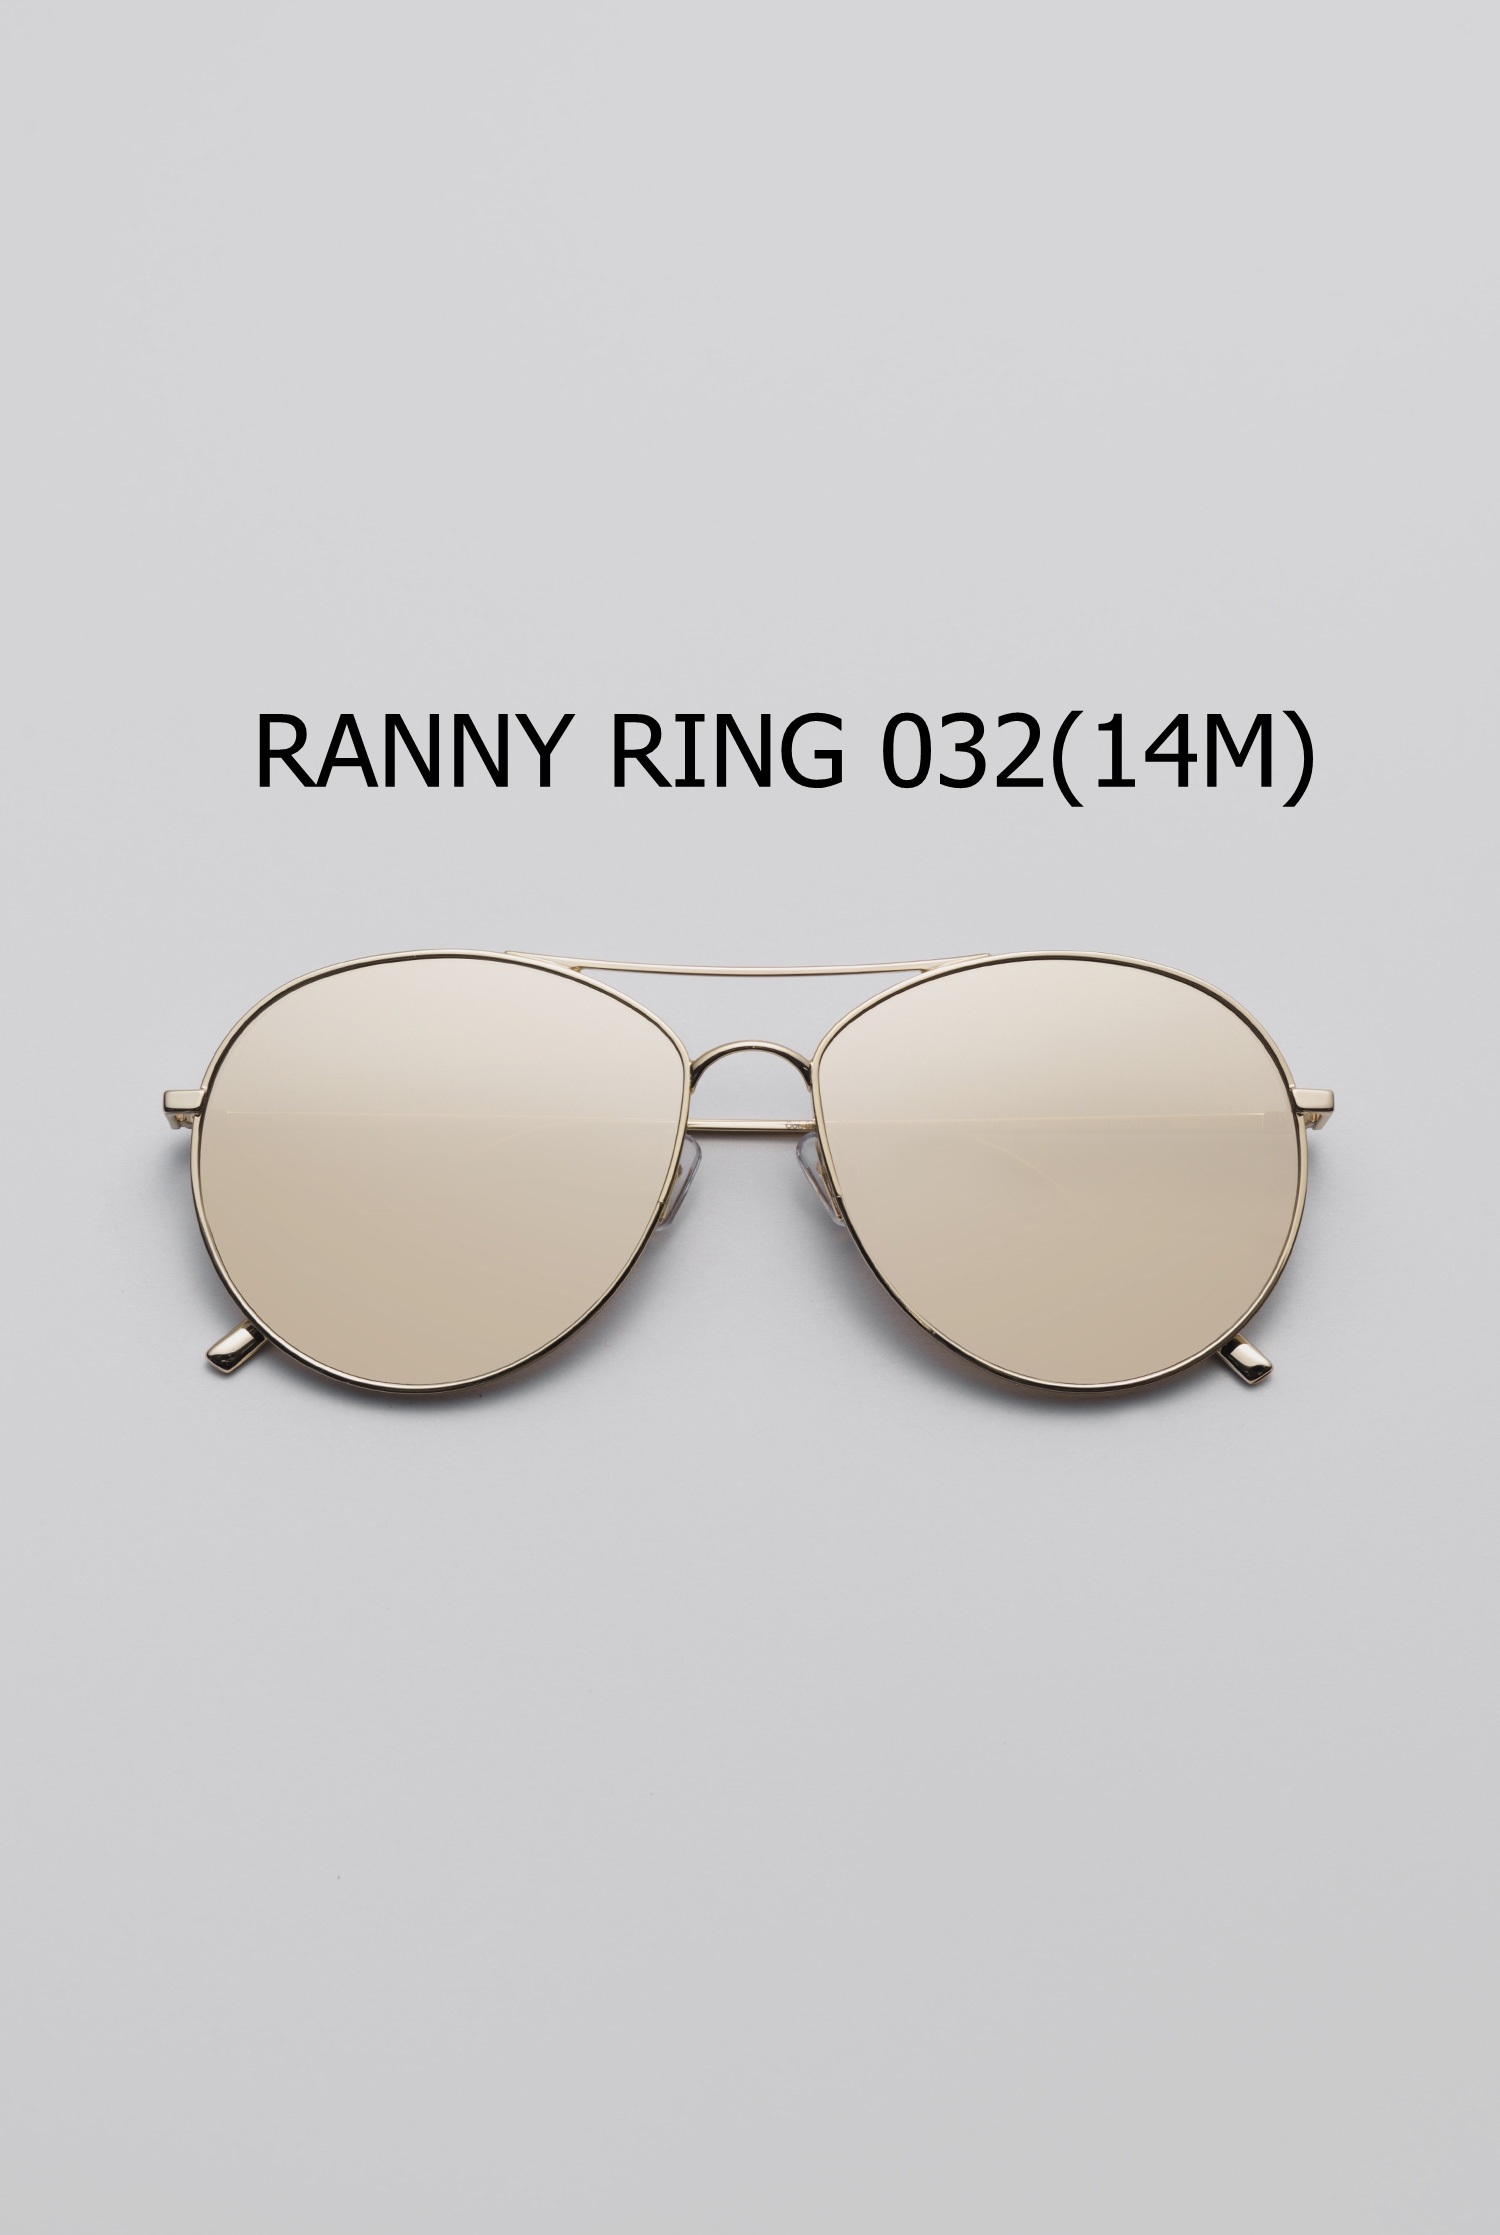 RANNY RING 032(14M) 